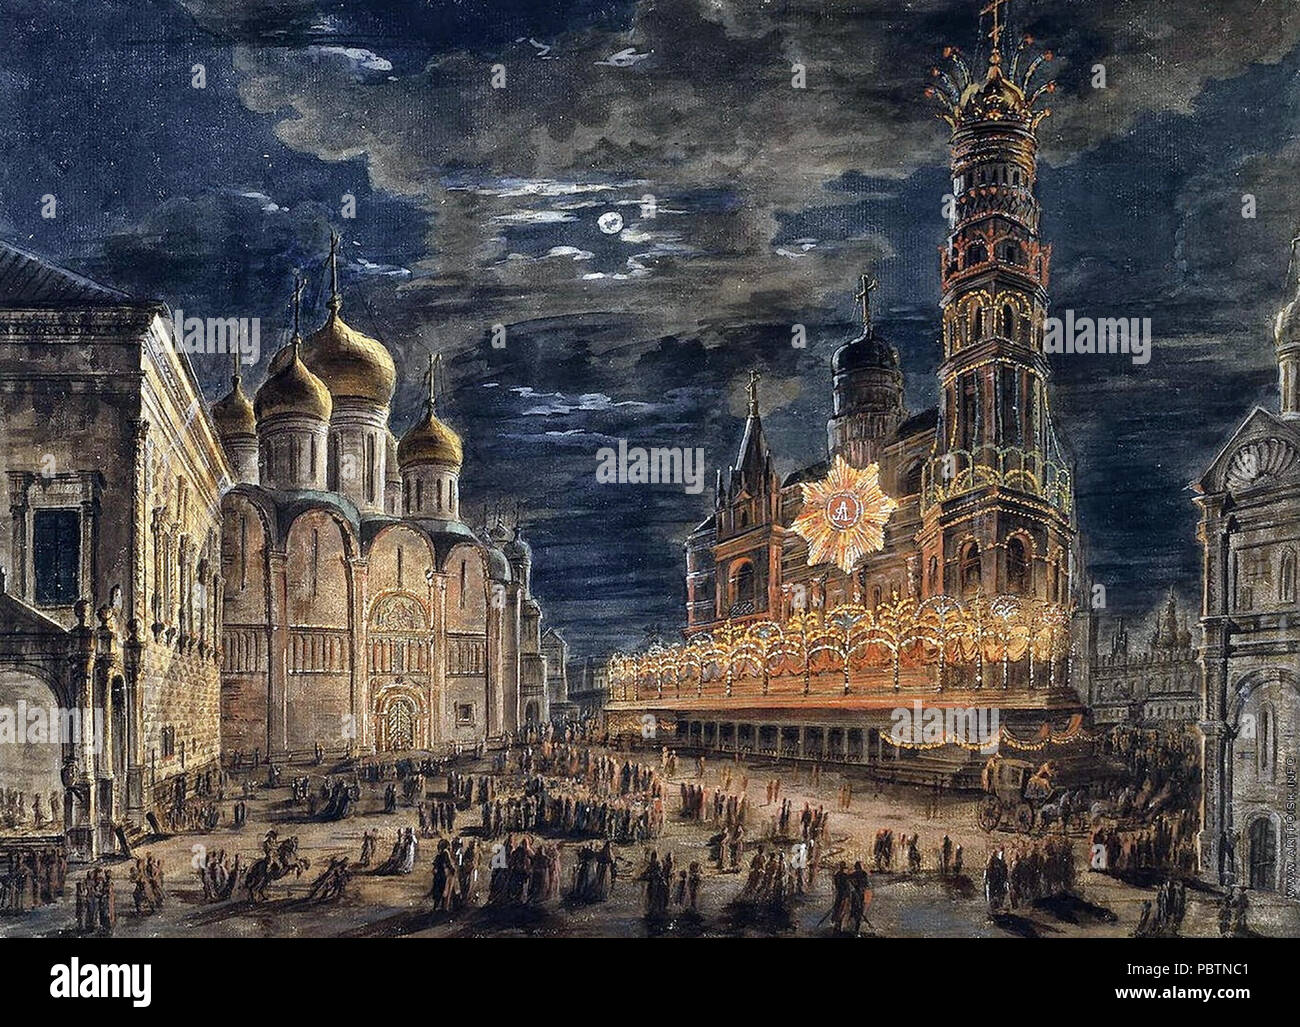 Illumination at Soboronaya Square on the occasion of the coronation of Alexander I - Fedor Alekseev, 1802 Stock Photo